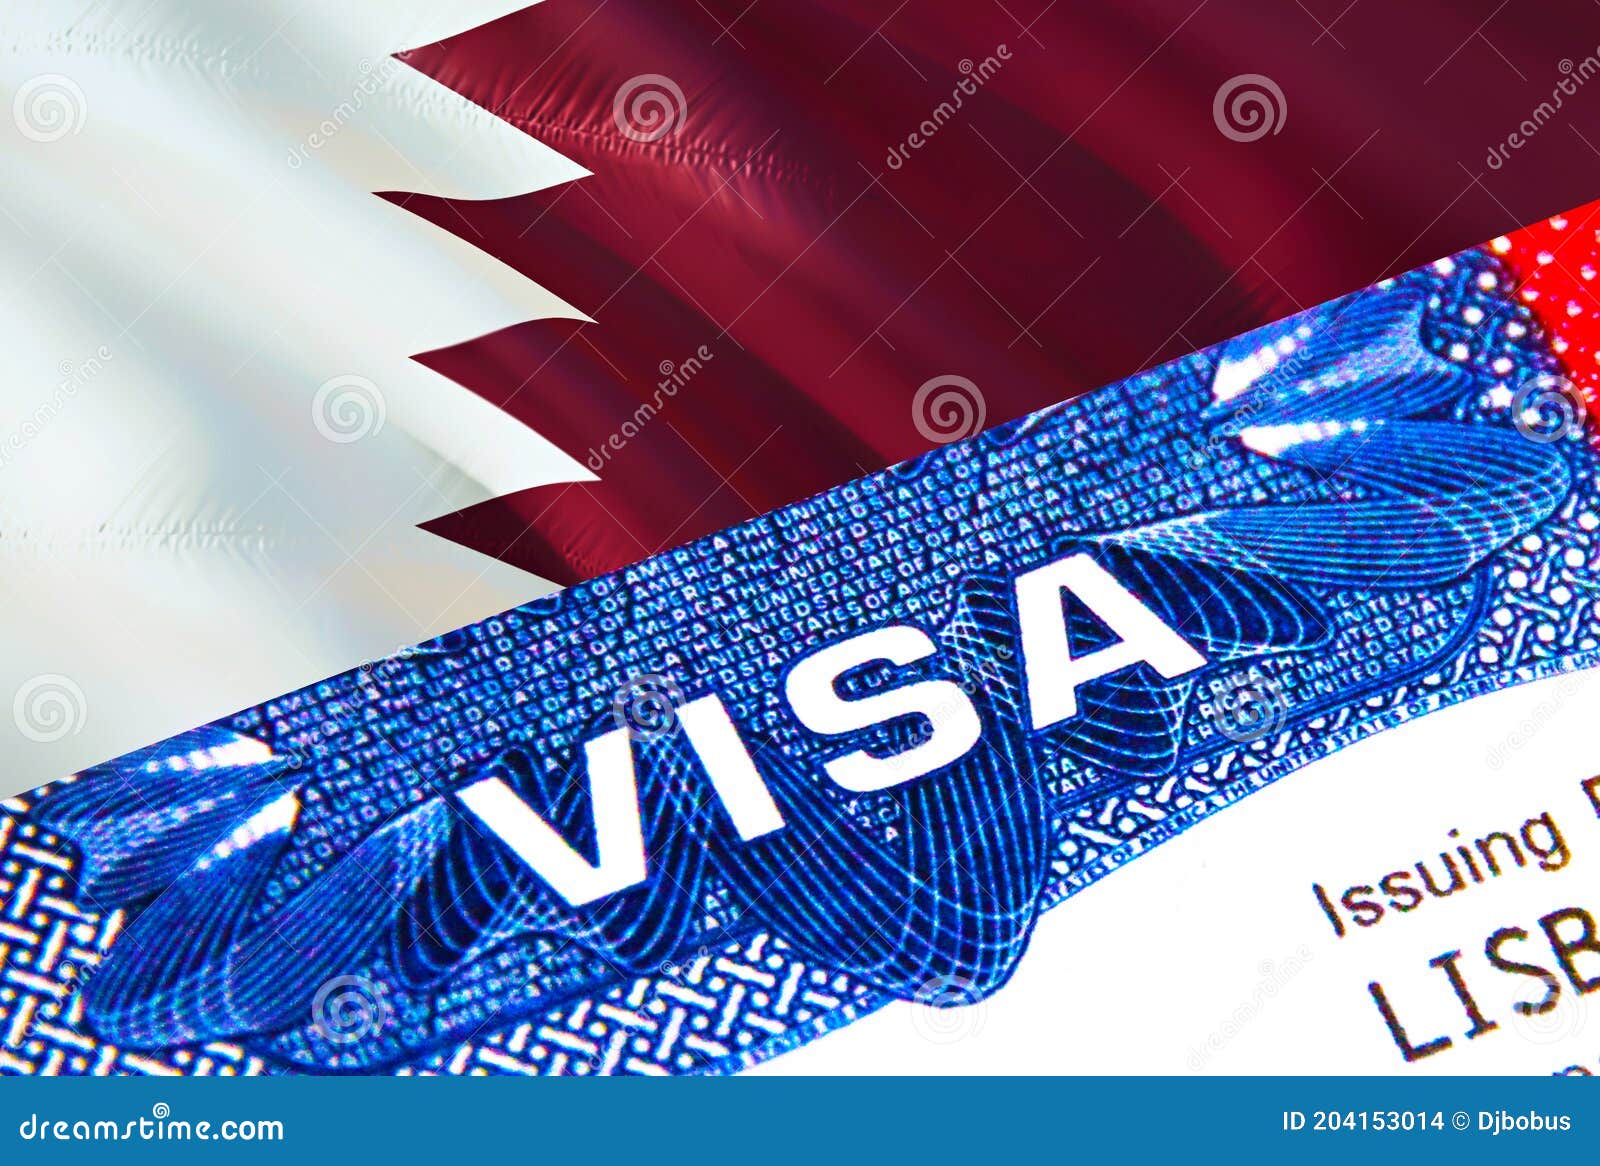 us citizen visit qatar visa